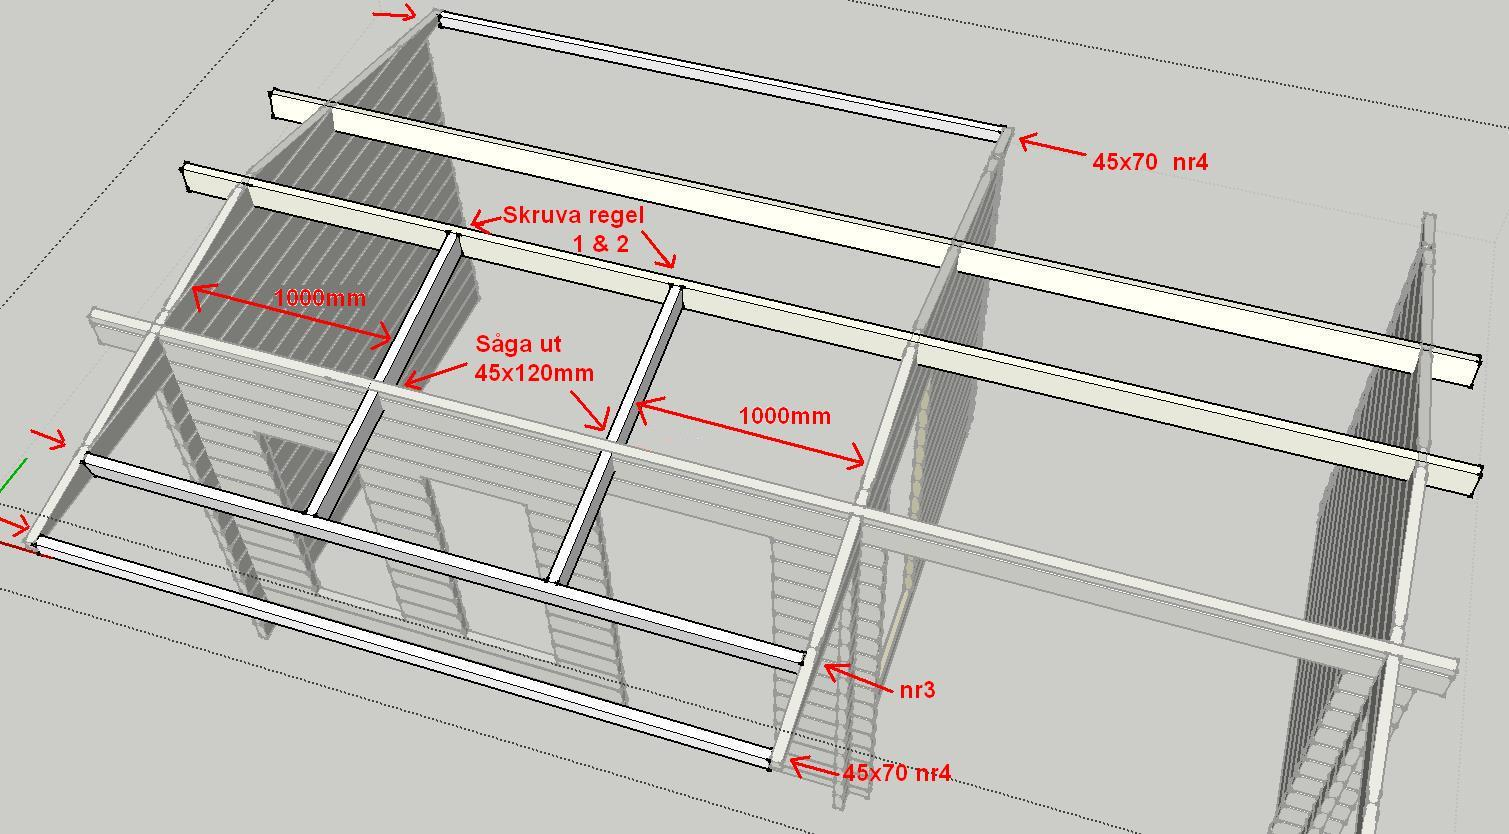 Montera takåsar Börja med att såga ut 2st hål 45x120mm (se pilarna) under det befintliga taket, det ska vara ca 1000mm mellan ytter och mellanväg till regel 1 och 2 som man trär in genom de gjorda